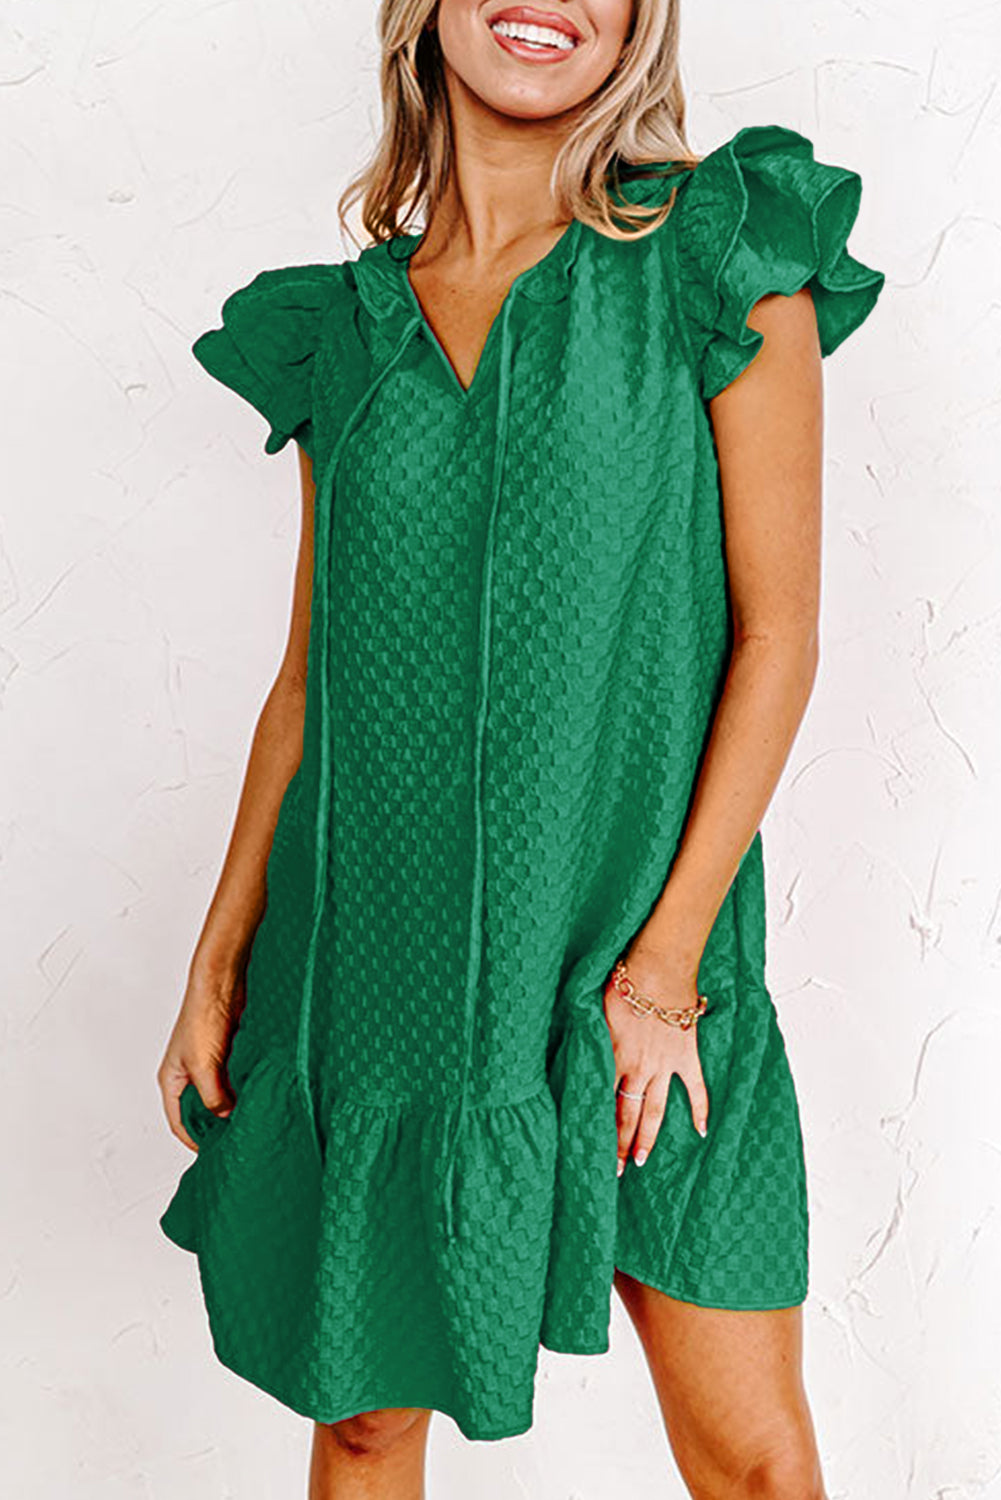 Črnkasto zelena plapolasta plapolasta obleka z naborki in teksturo